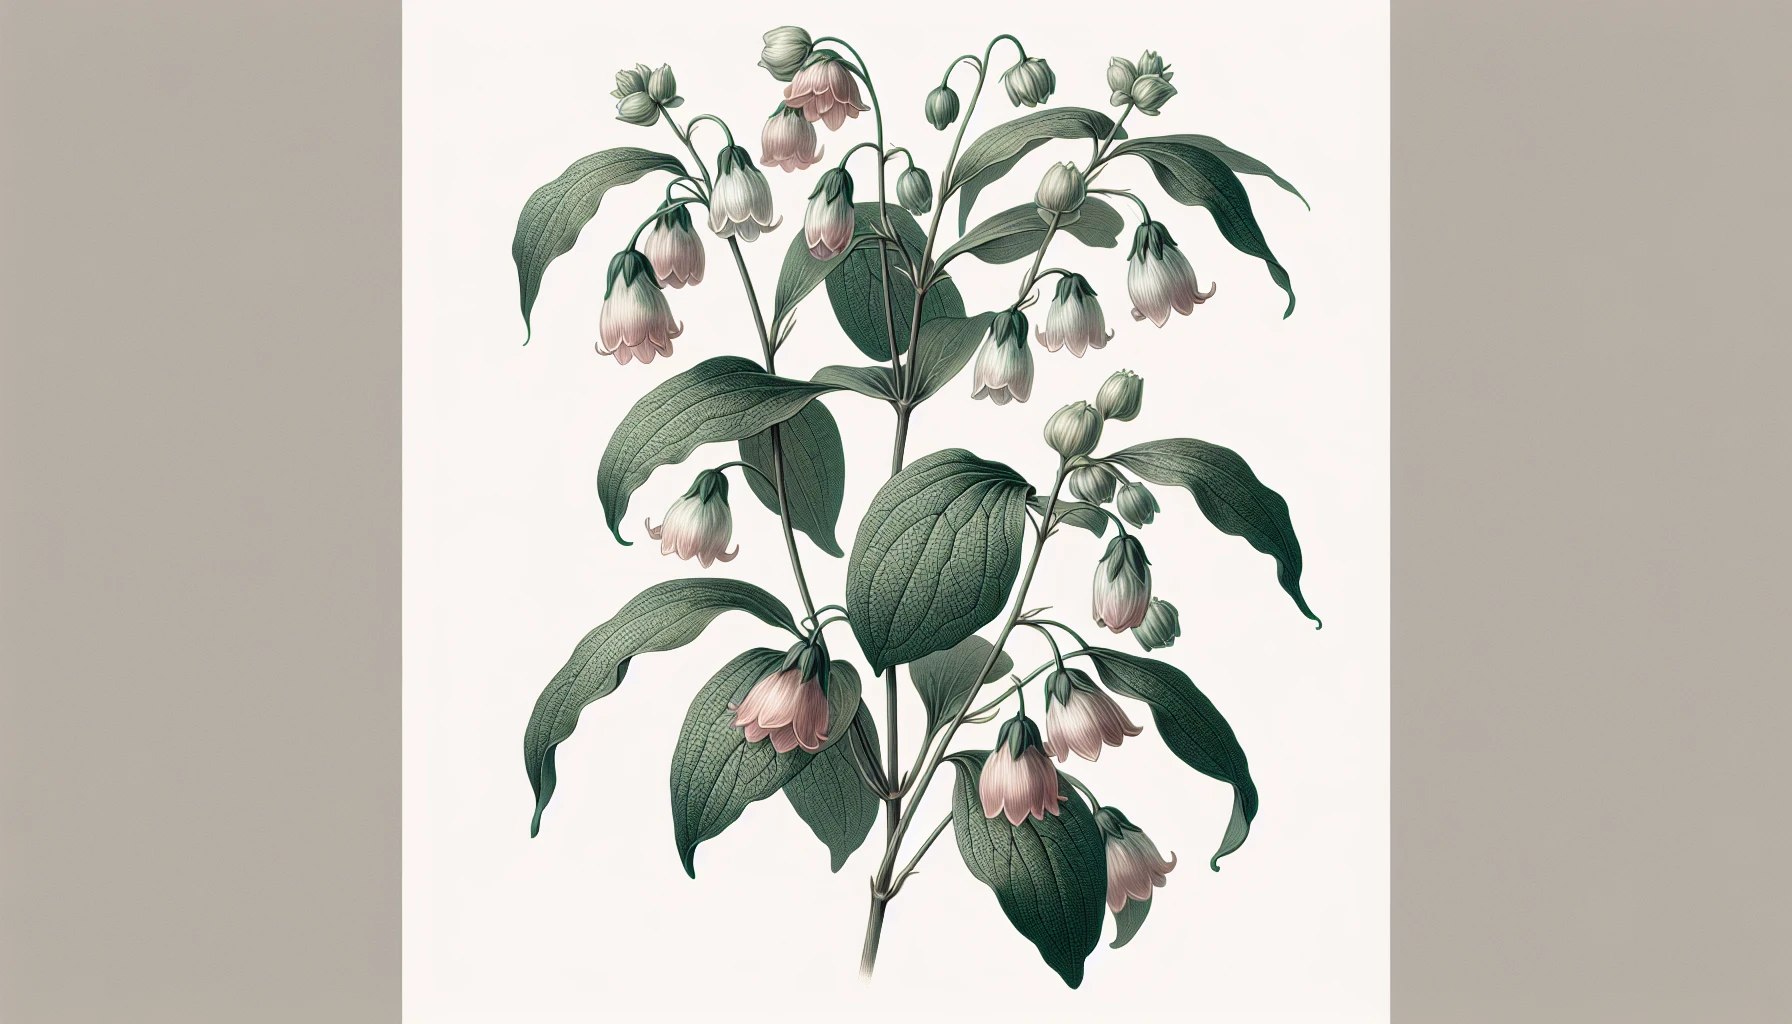 Botanical illustration of the Mayflower plant